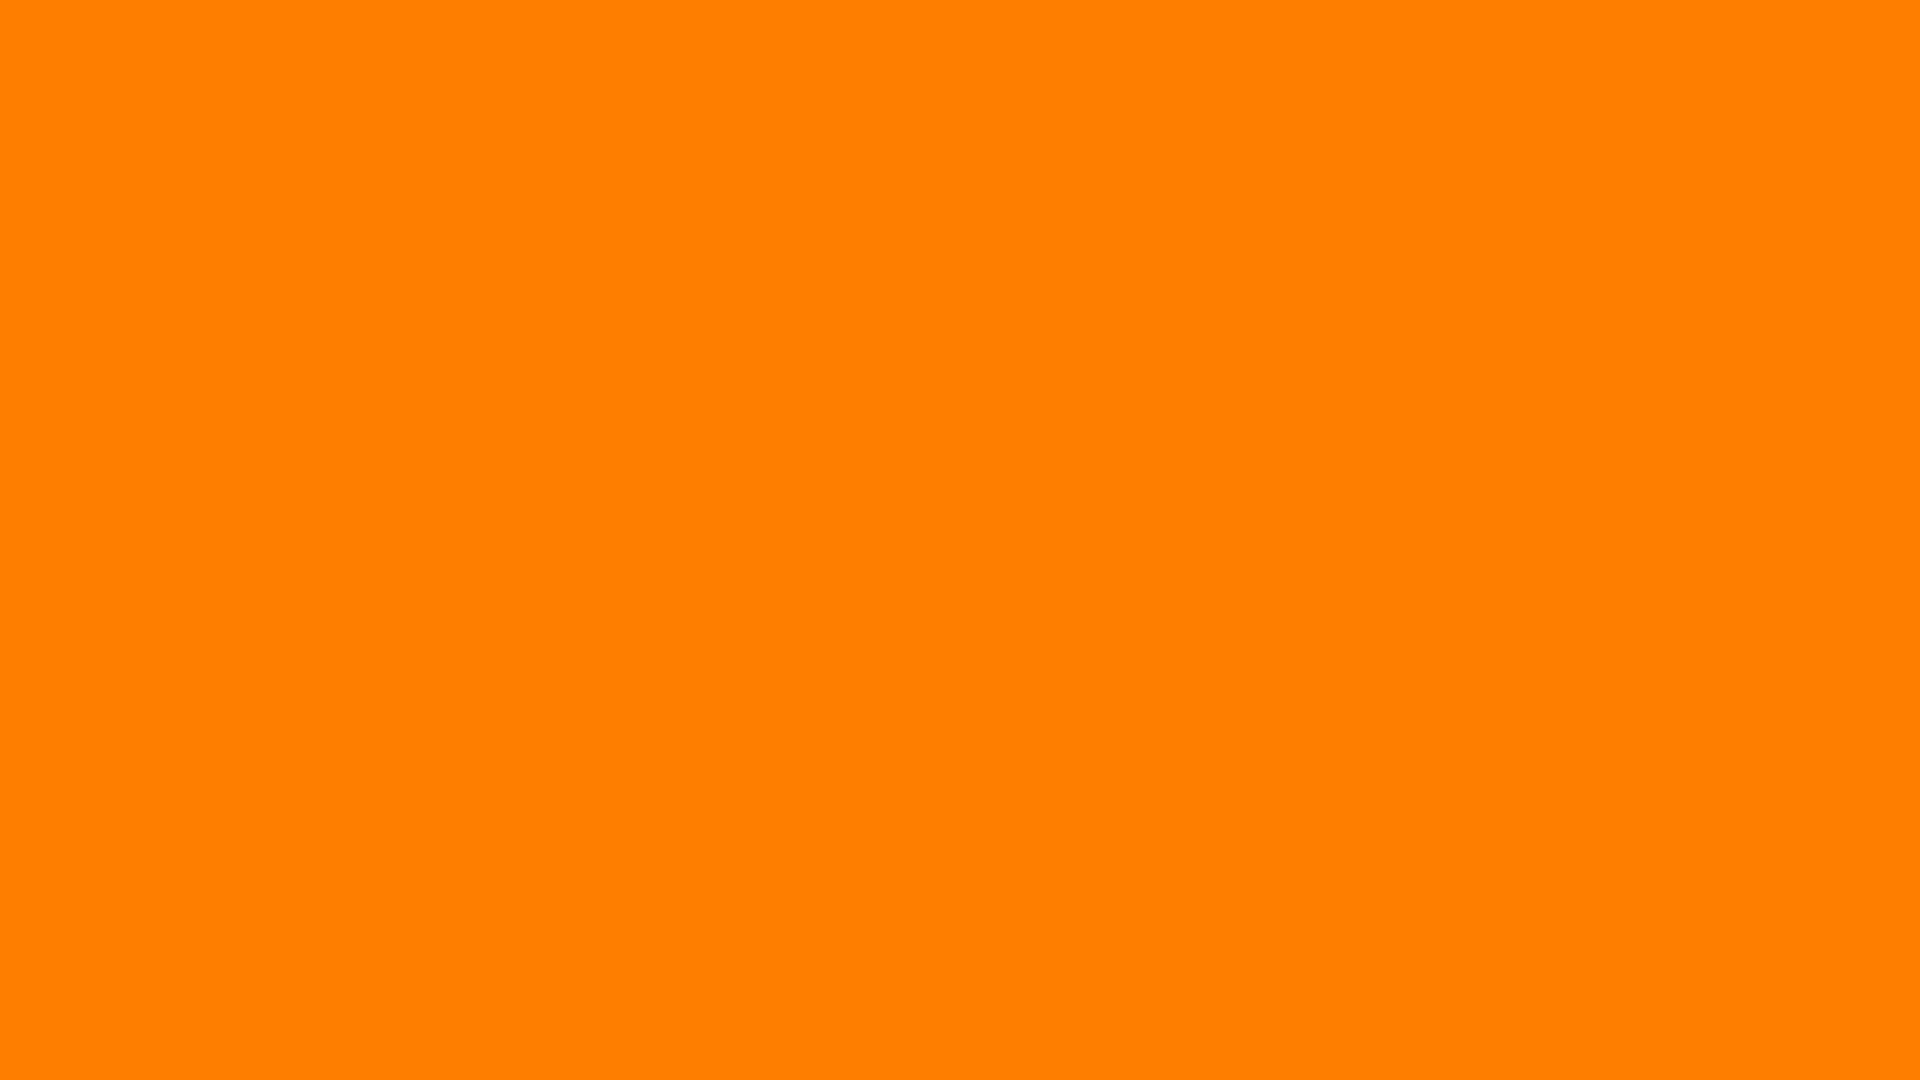 1920x1080-amber-orange-solid-color-background.jpg